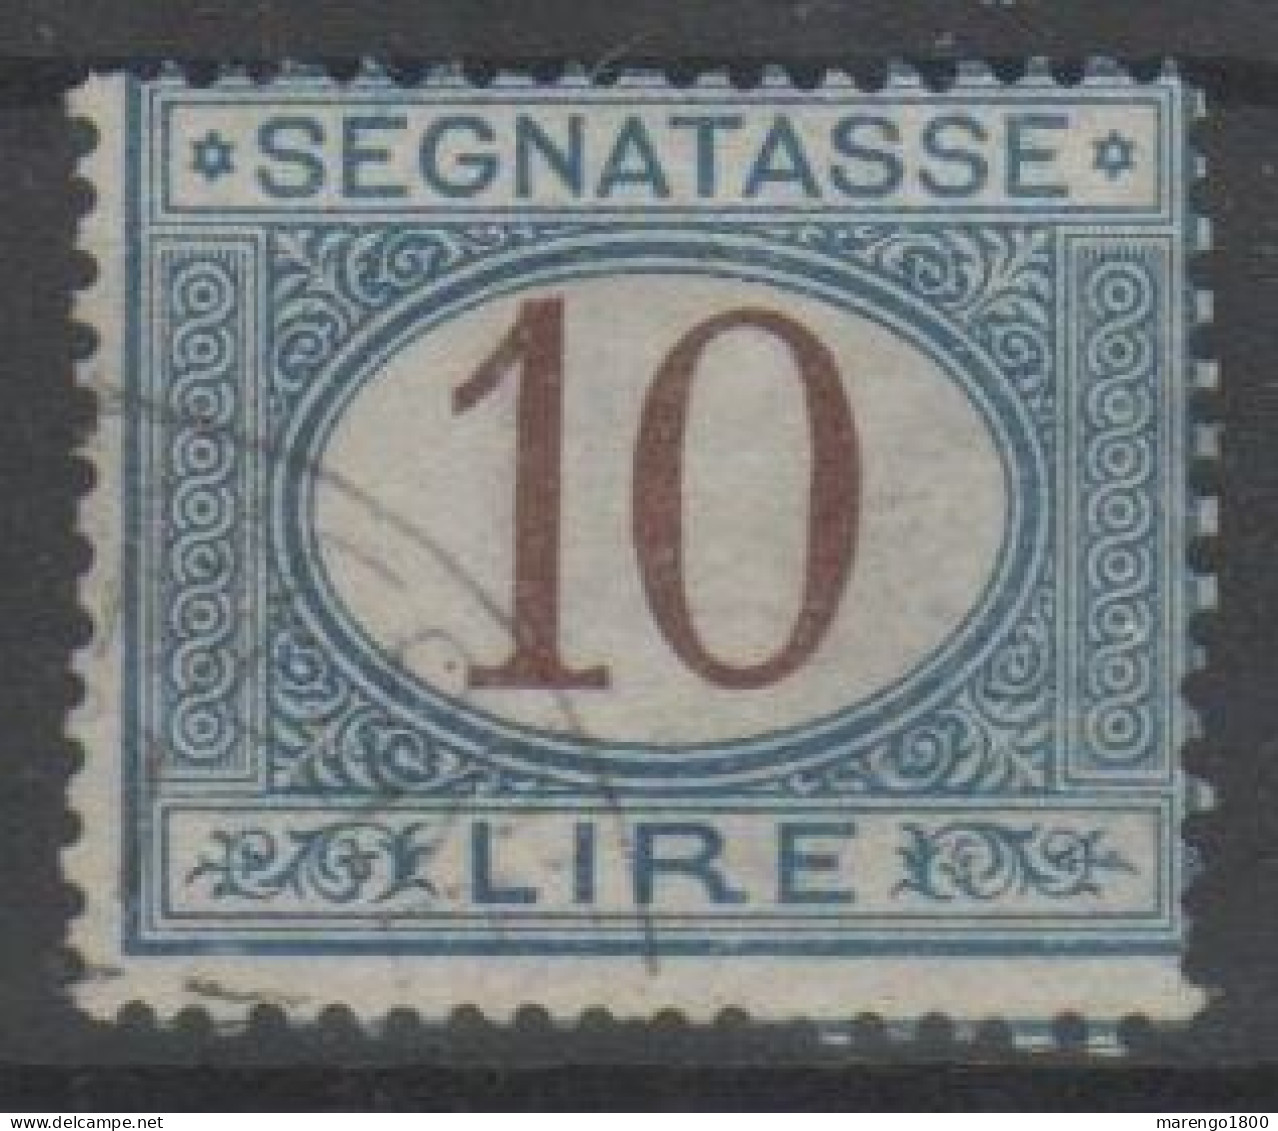 ITALIA 1874 - Segnatasse 10 L. - Postage Due